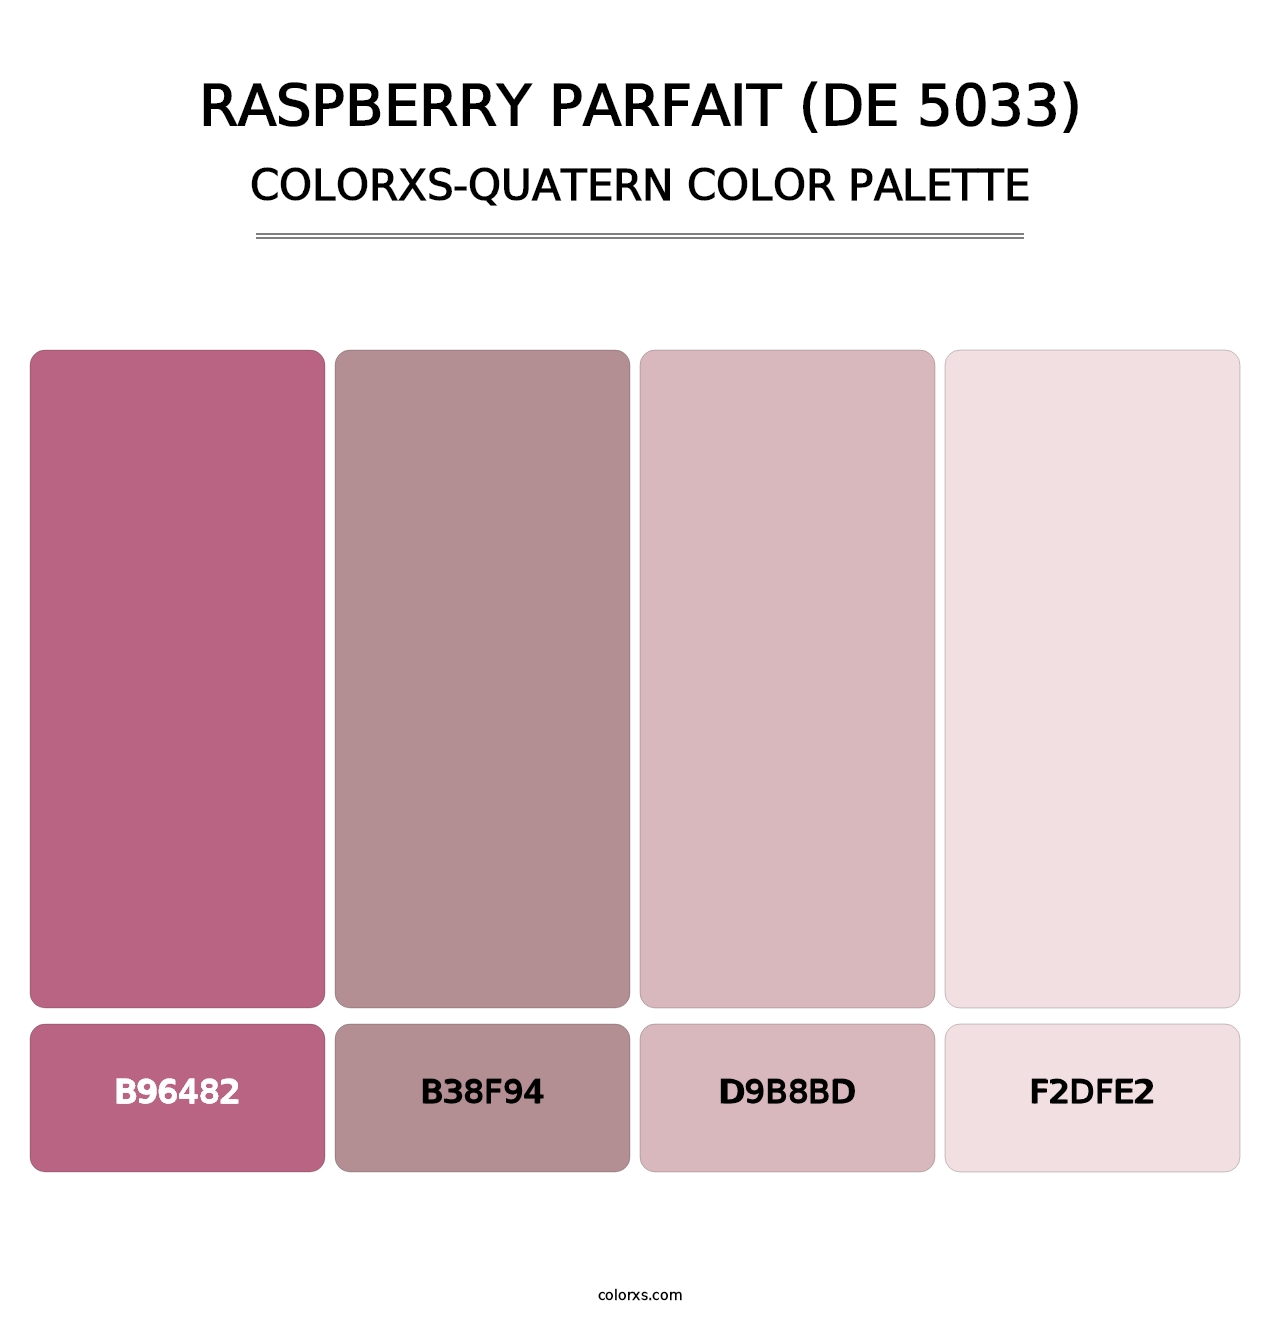 Raspberry Parfait (DE 5033) - Colorxs Quatern Palette